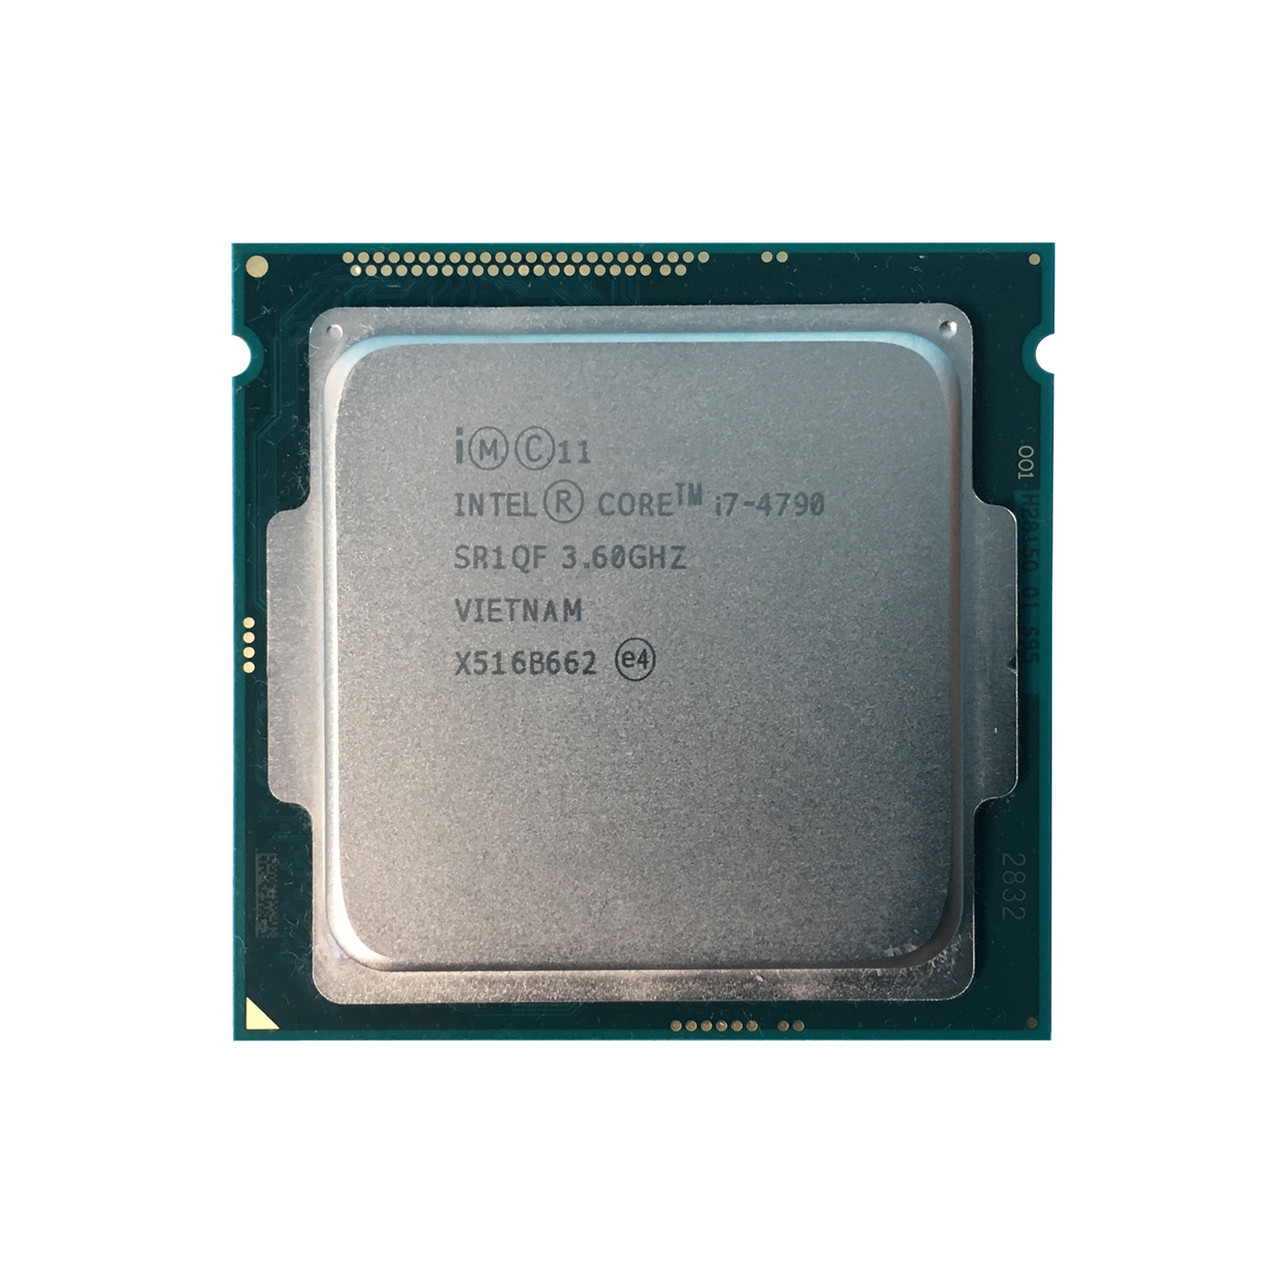 Dell M44WN | Intel i7-4790 QC 3.6Ghz 8MB 5GTs Processor - Serverworlds